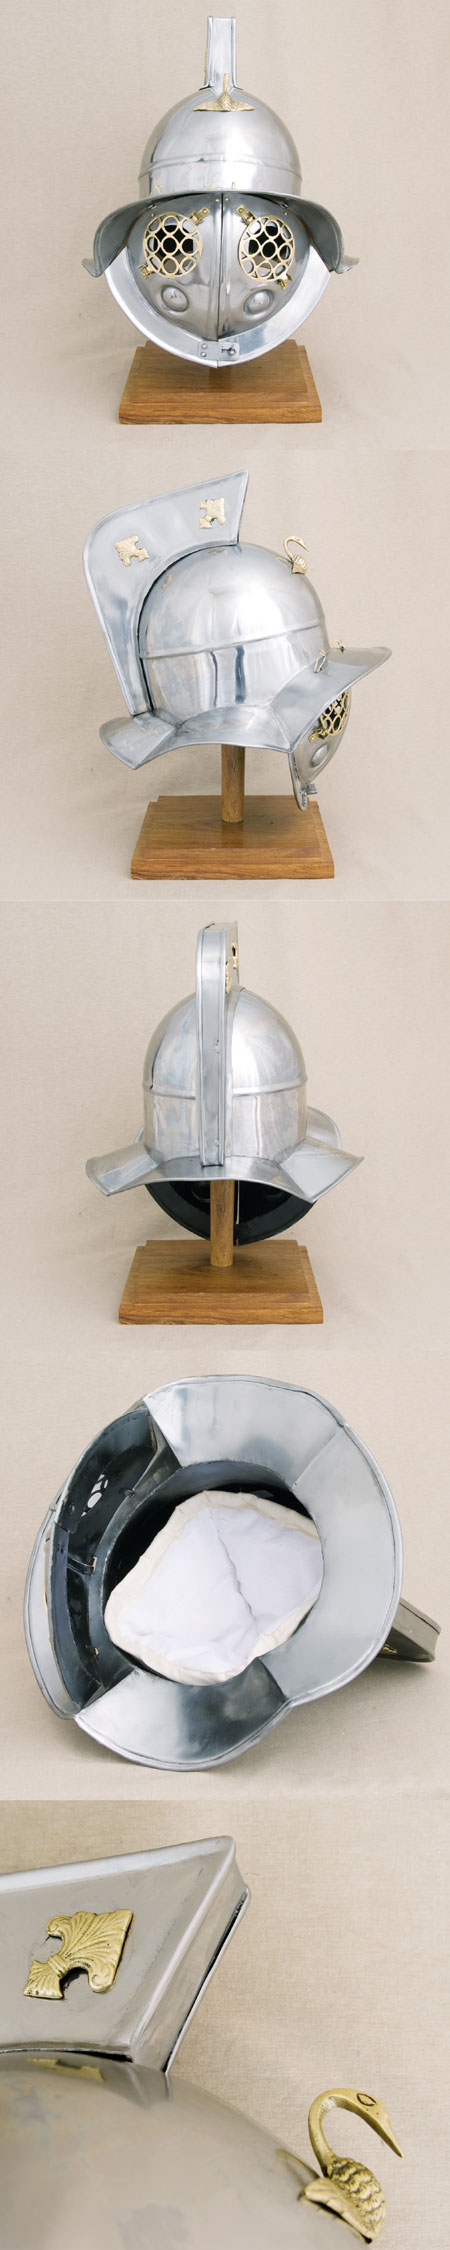 Römer Helm der Gladiatoren, Replika, wie in Pompei 79AD